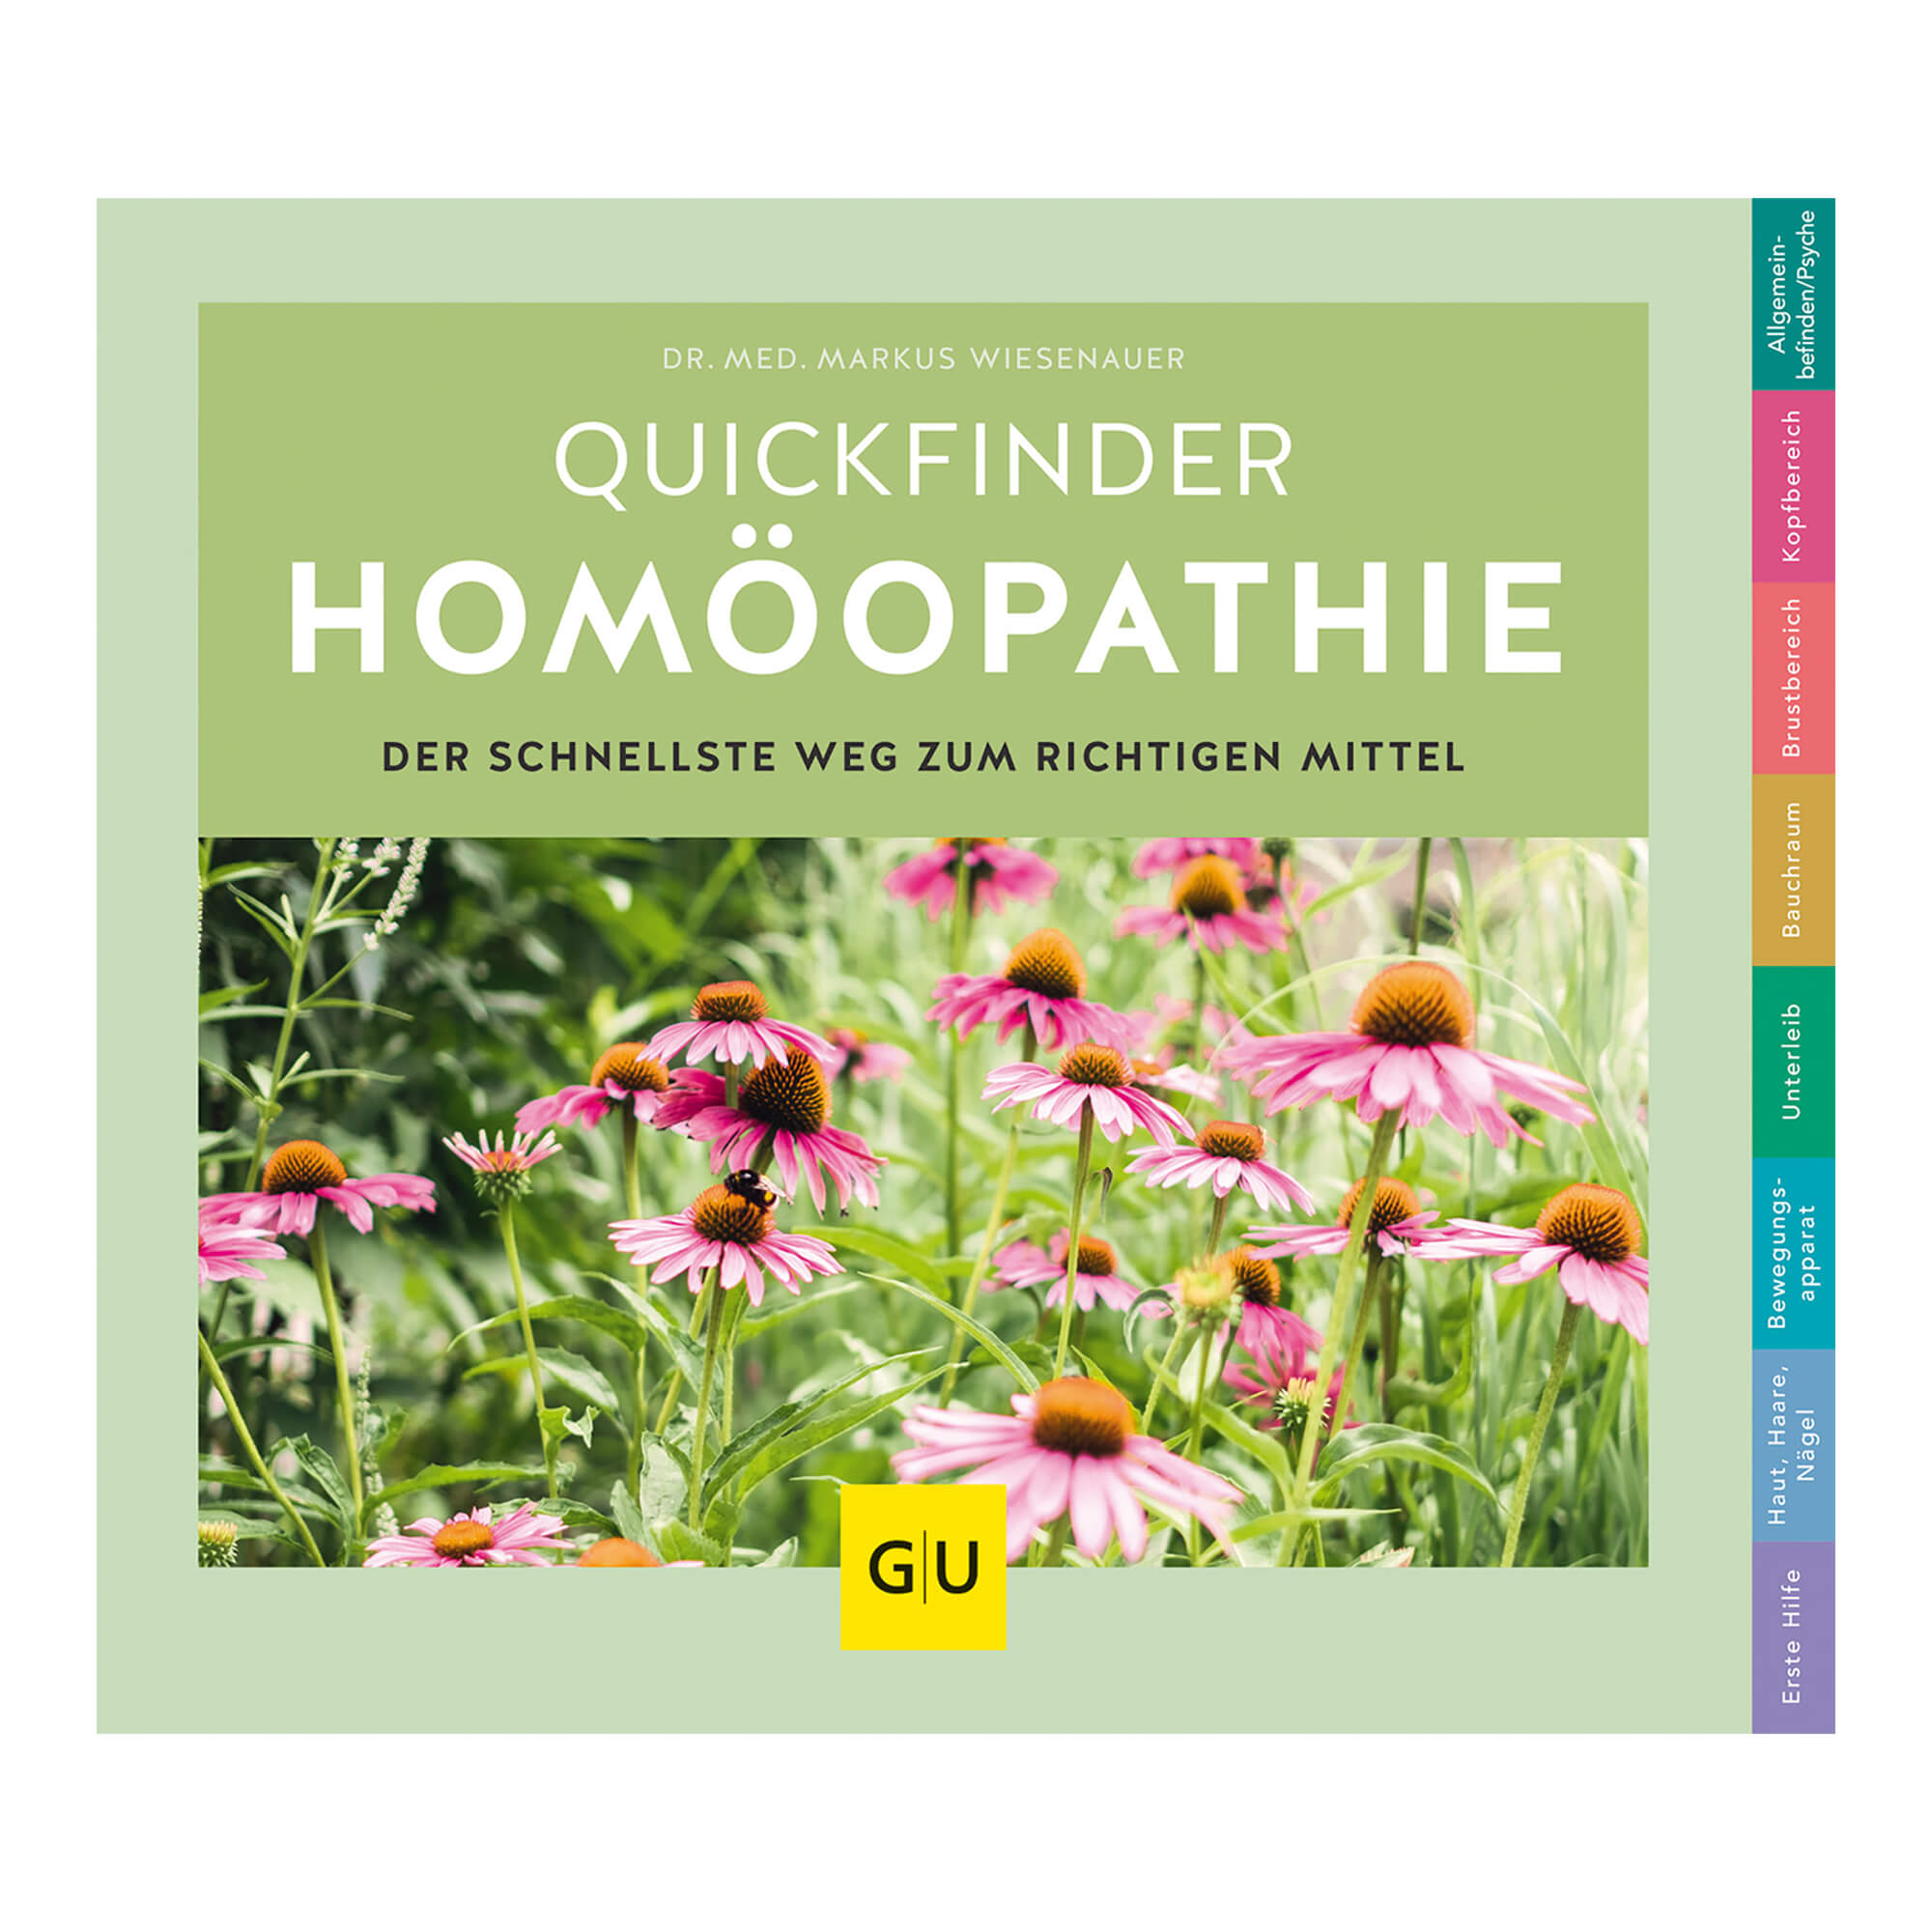 Das moderne Homöopathie-Buch für alle, die schnell und sicher das richtige Mittel finden möchten.